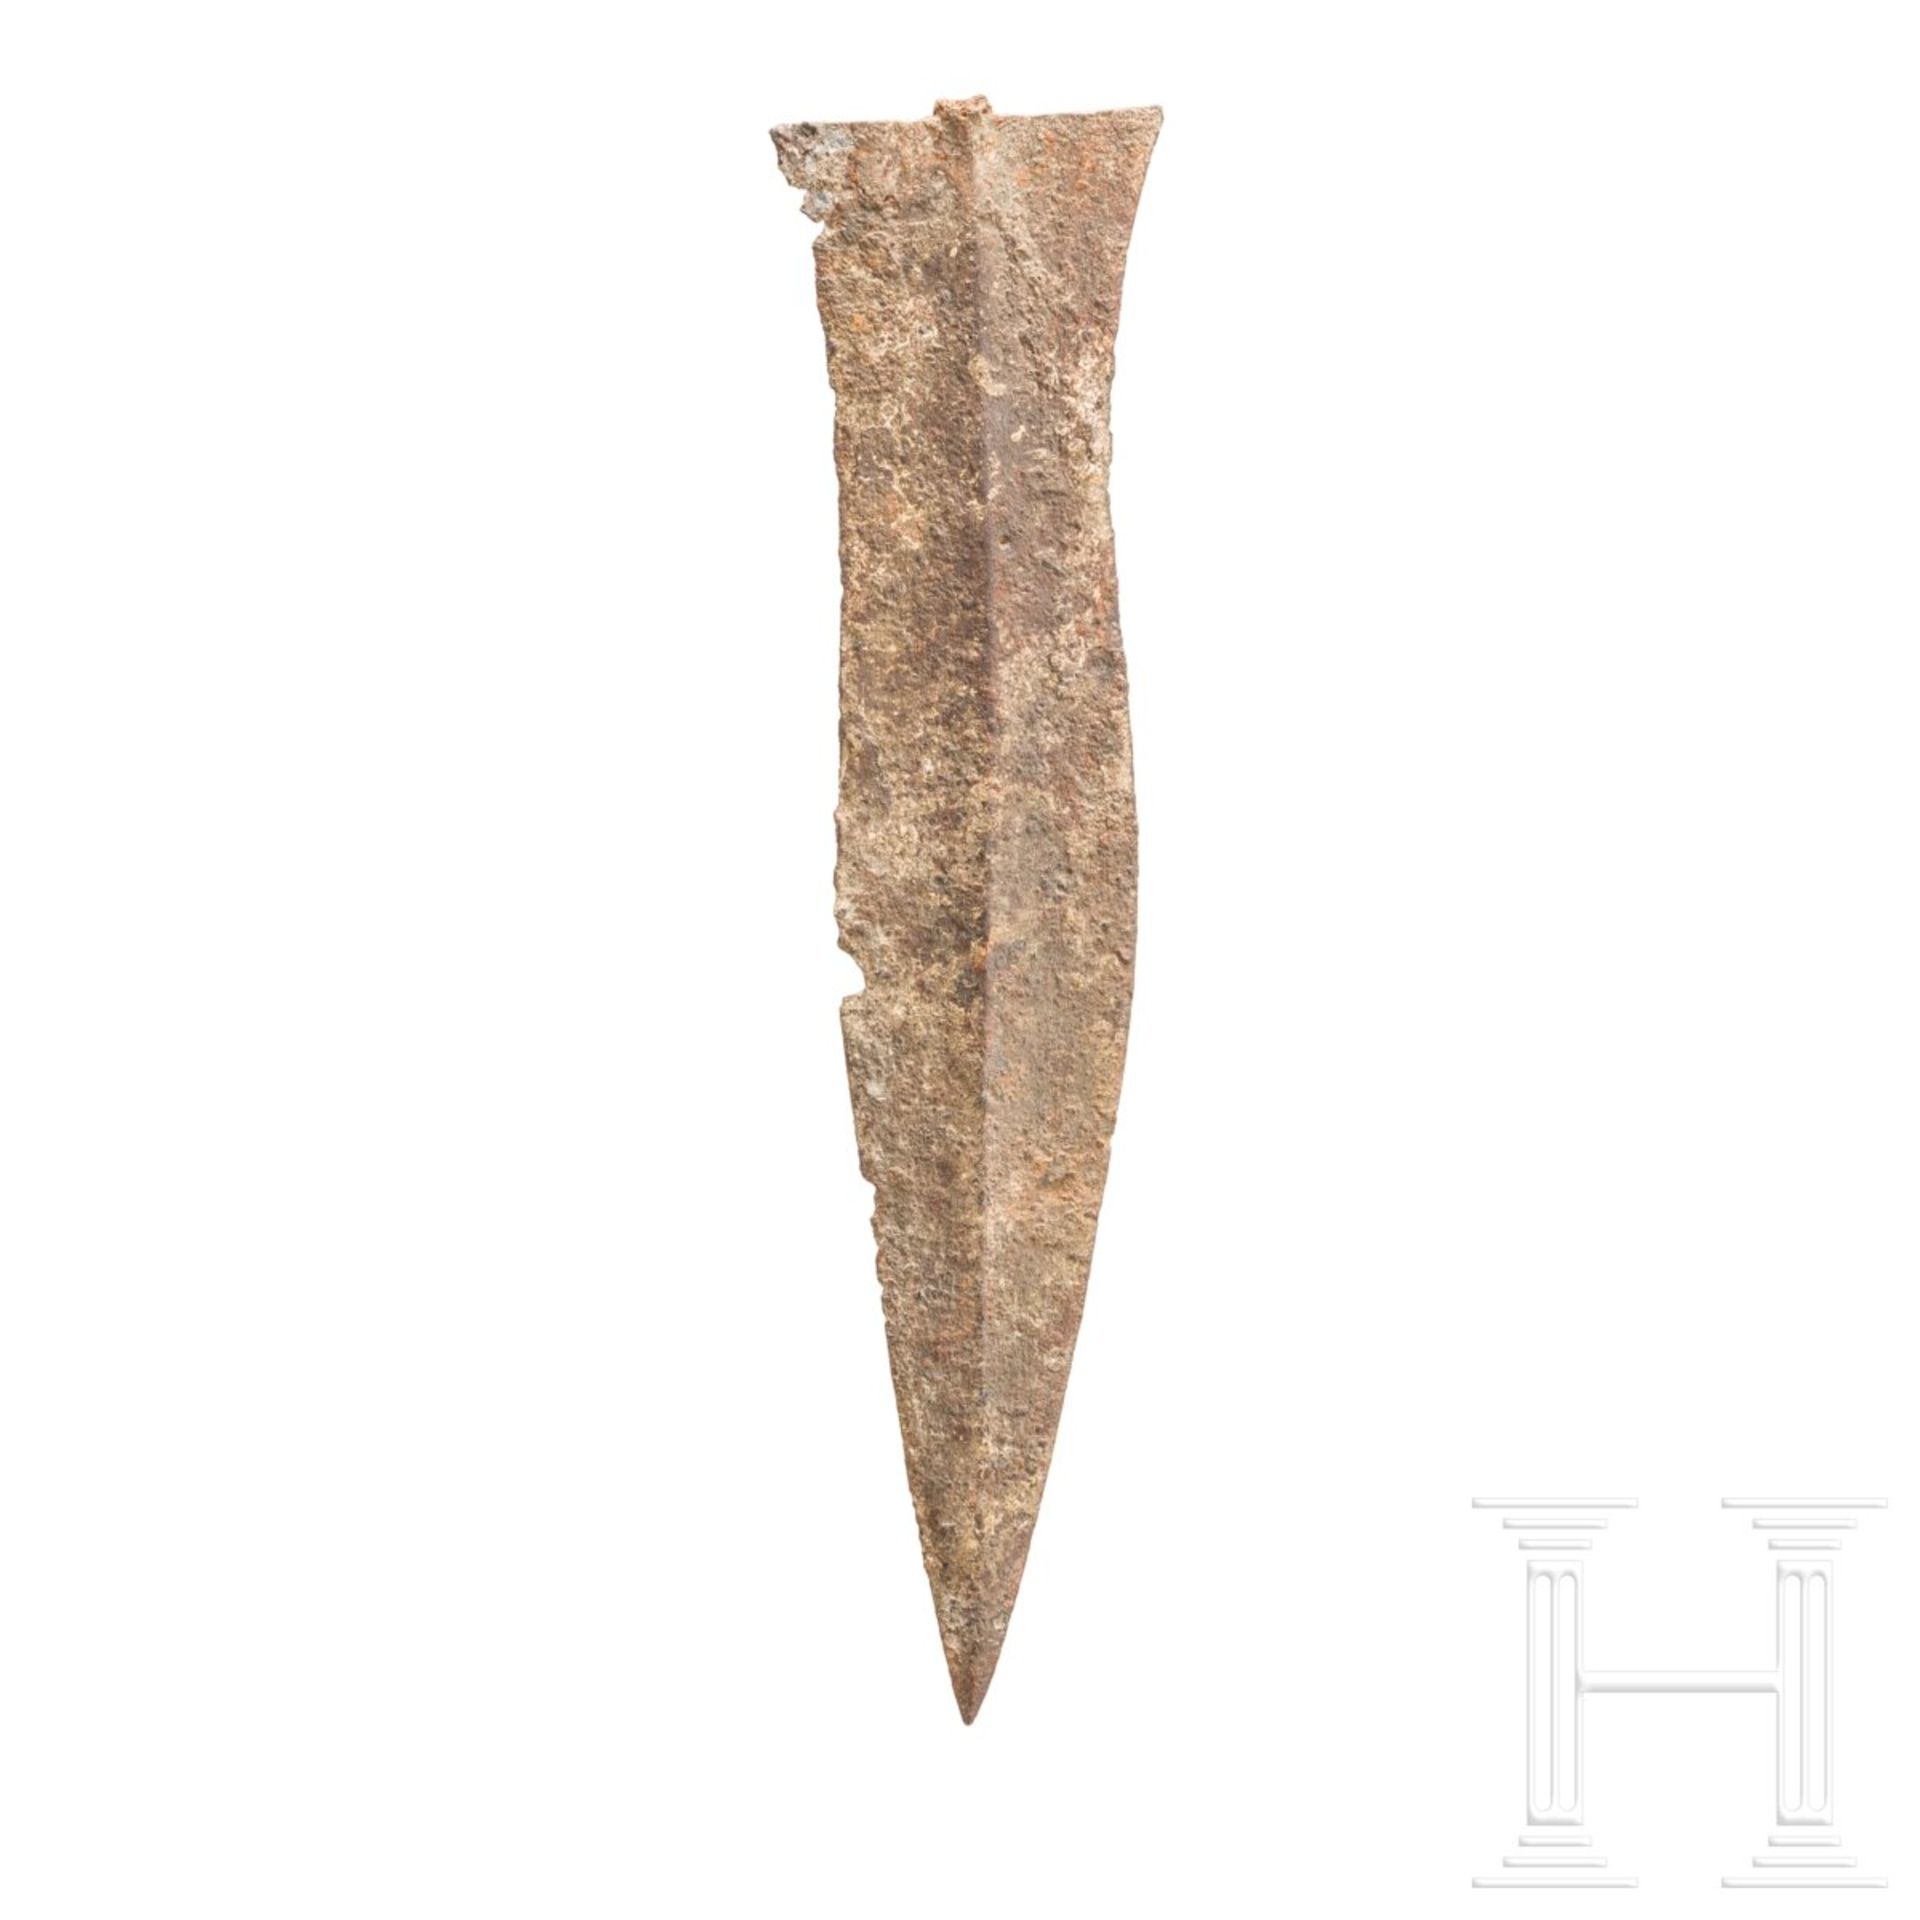 Dolchklinge vom Typ Künzing, römisch, 1. Hälfte - Mitte 3. Jhdt. n. Chr. - Image 2 of 3